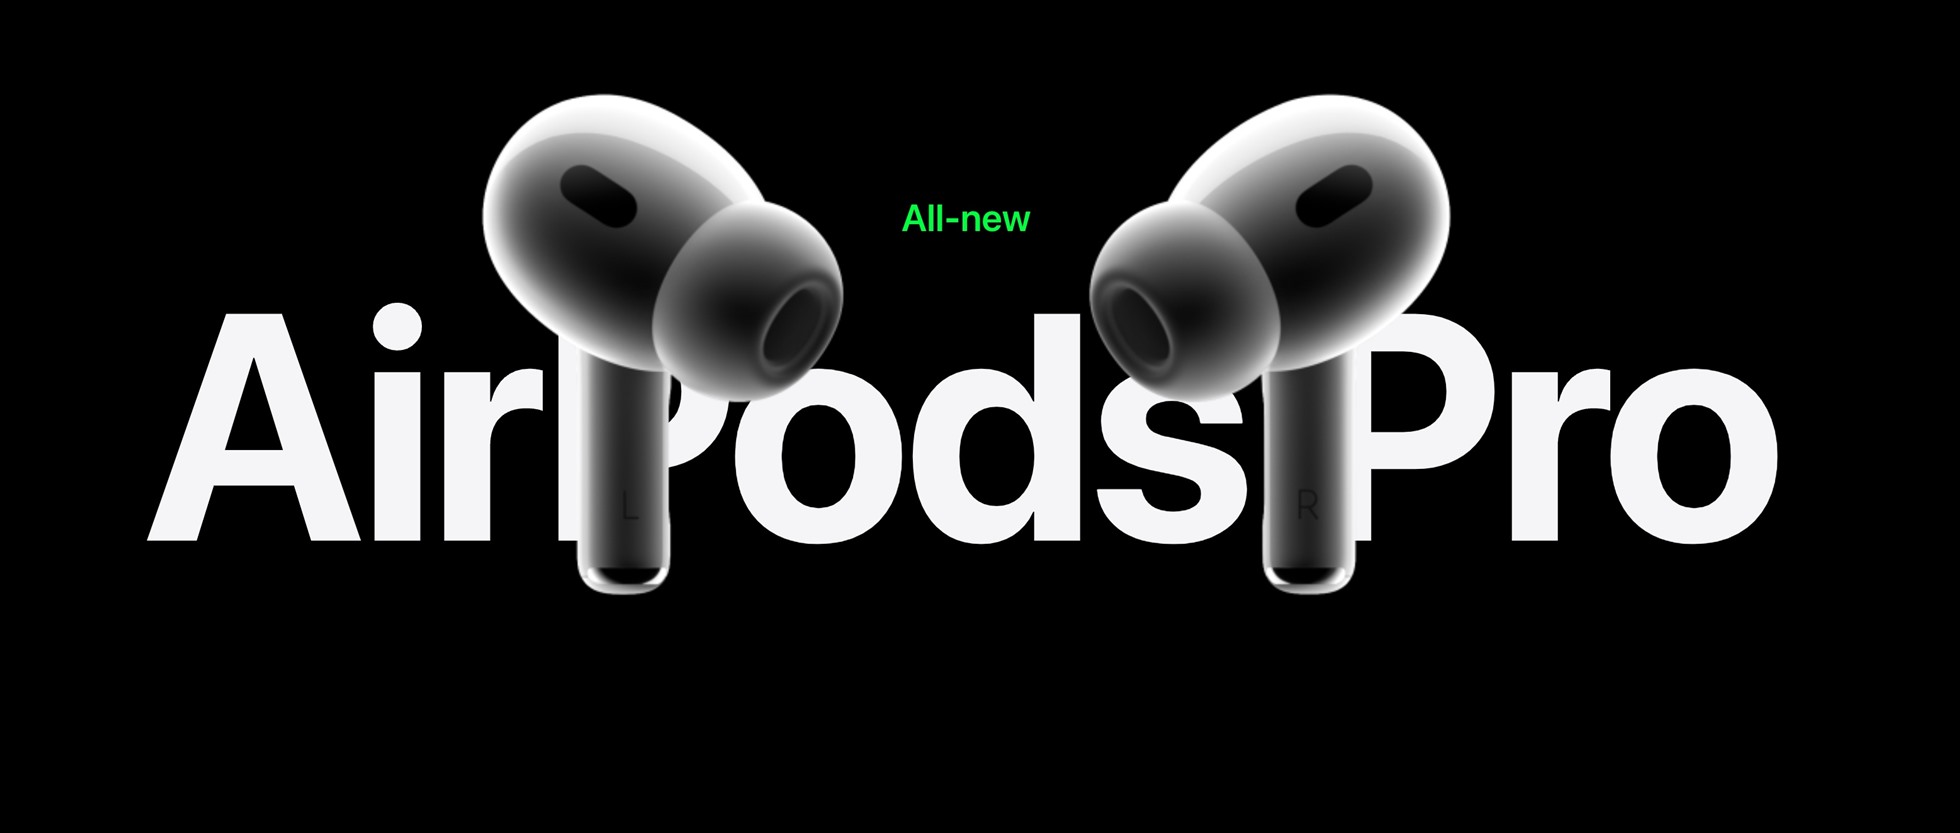 AirPods Pro 2 là phiên bản nâng cấp đã được người hâm mộ chờ đợi từ lâu. Ảnh: Apple